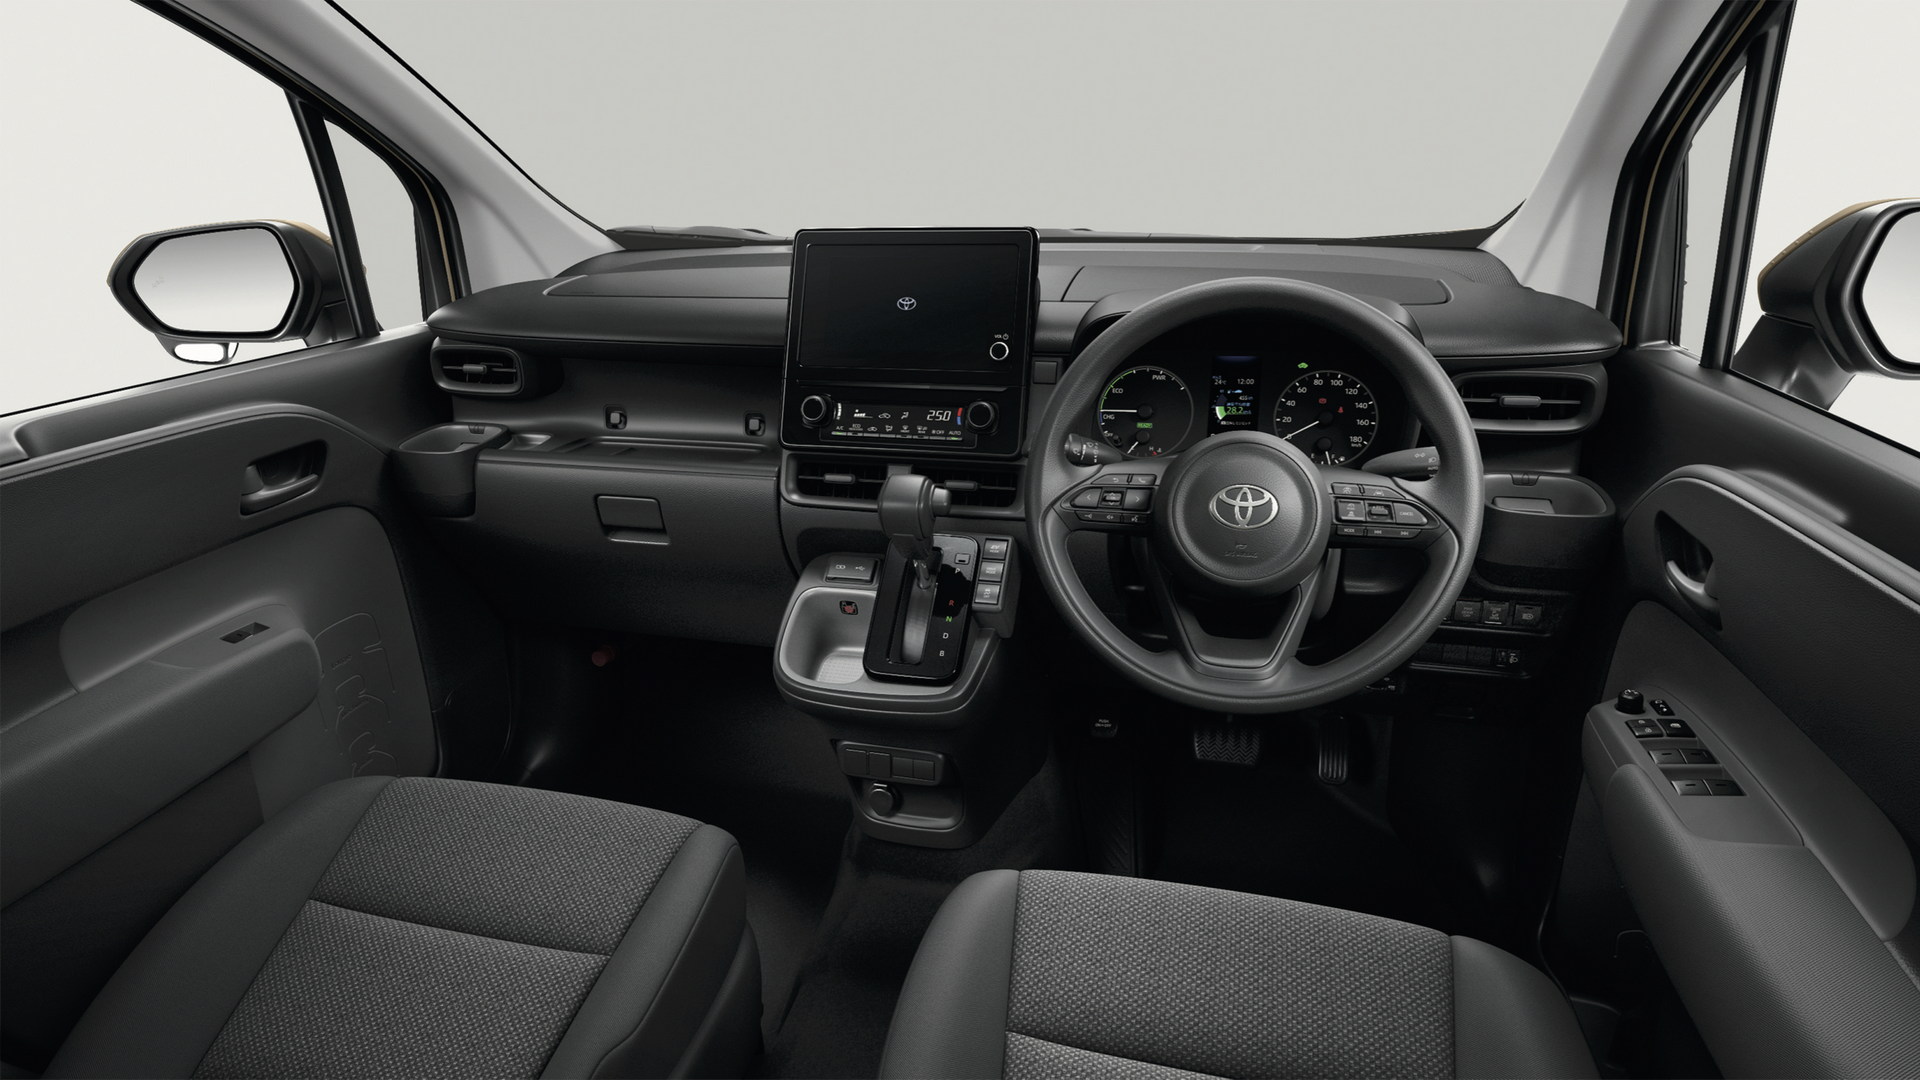 Yeni Toyota Sienta tanıtıldı: İşte tasarımı ve özellikleri